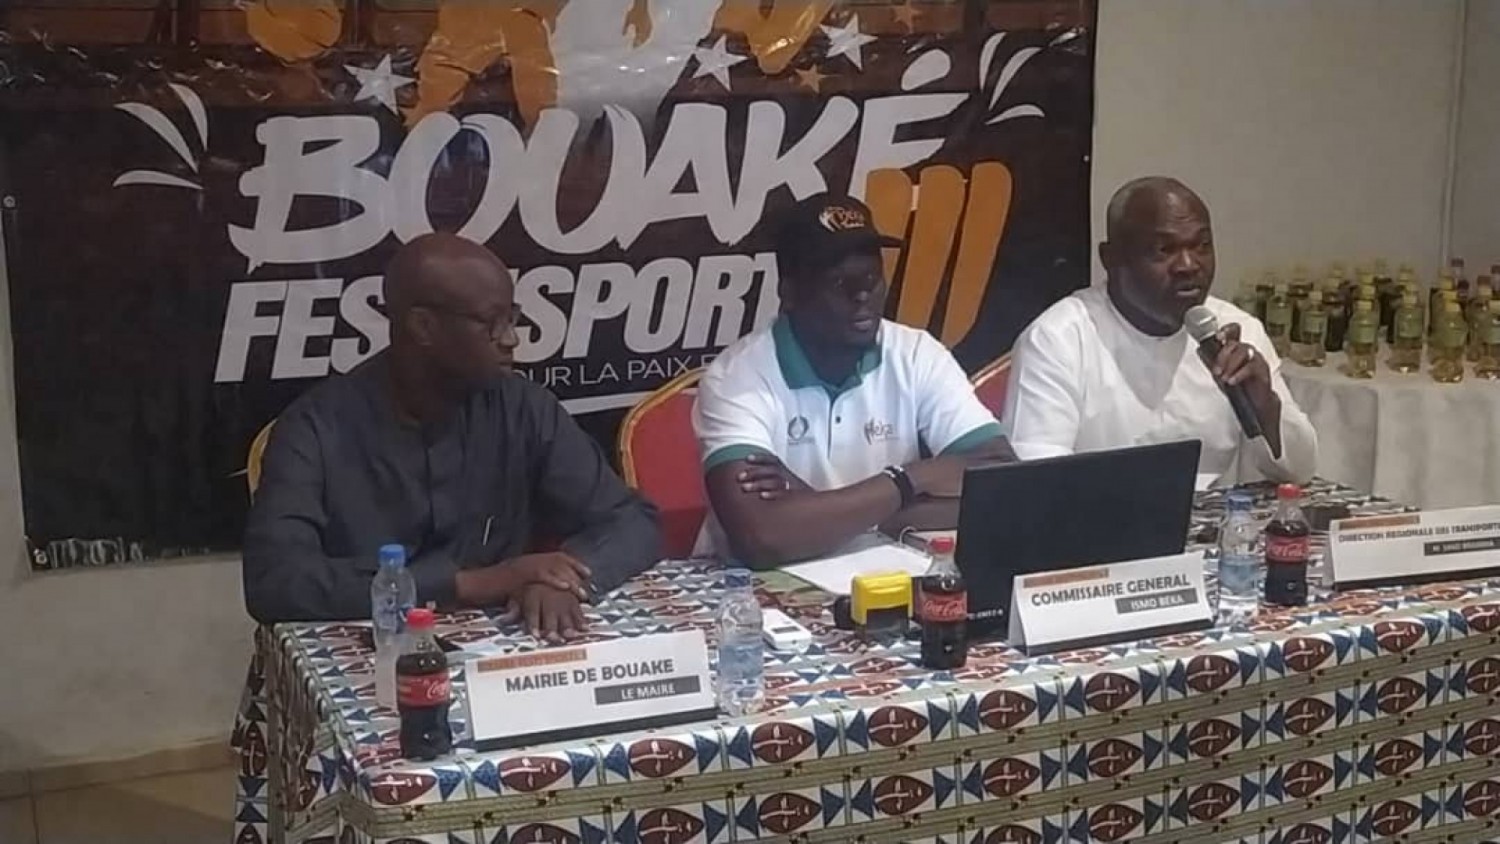 Côte d'Ivoire : Bouaké, institué pour pérenniser la paix, le Festi sport lance sa 3ème édition